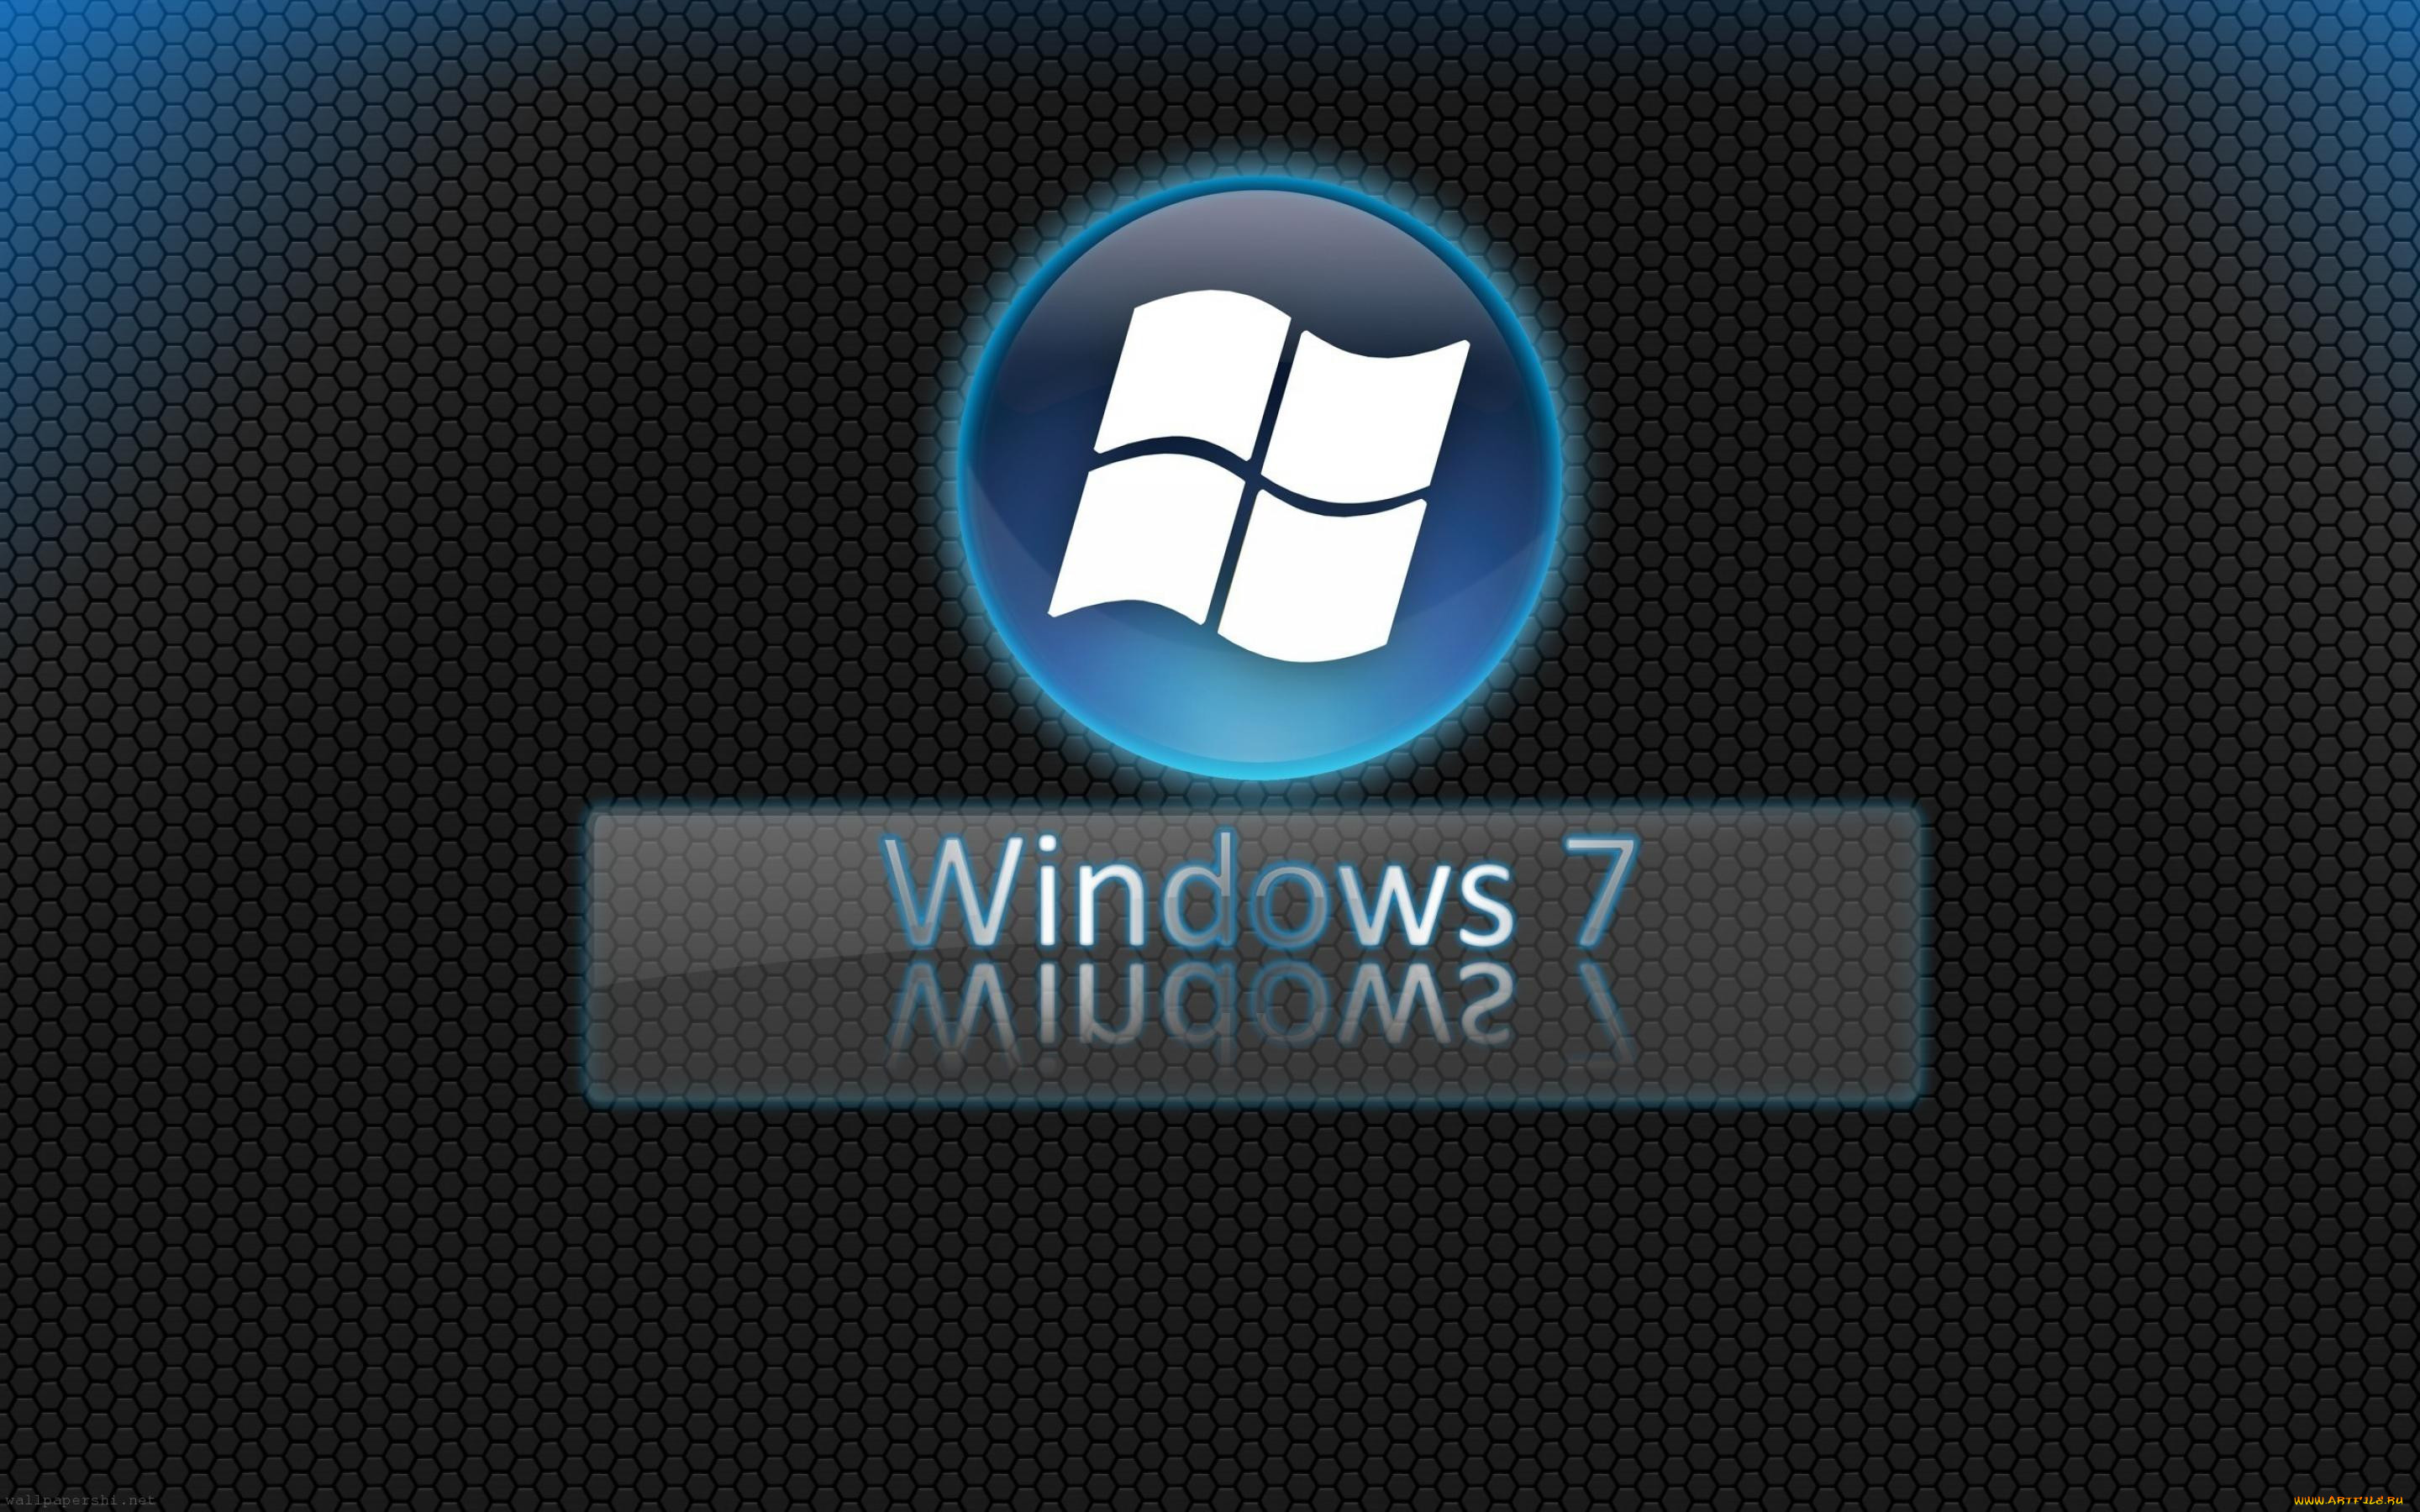 Сборки вин 7. Виндовс 7. Обои Windows 7. Логотип Windows 7. Обои Windows 7 профессиональная.